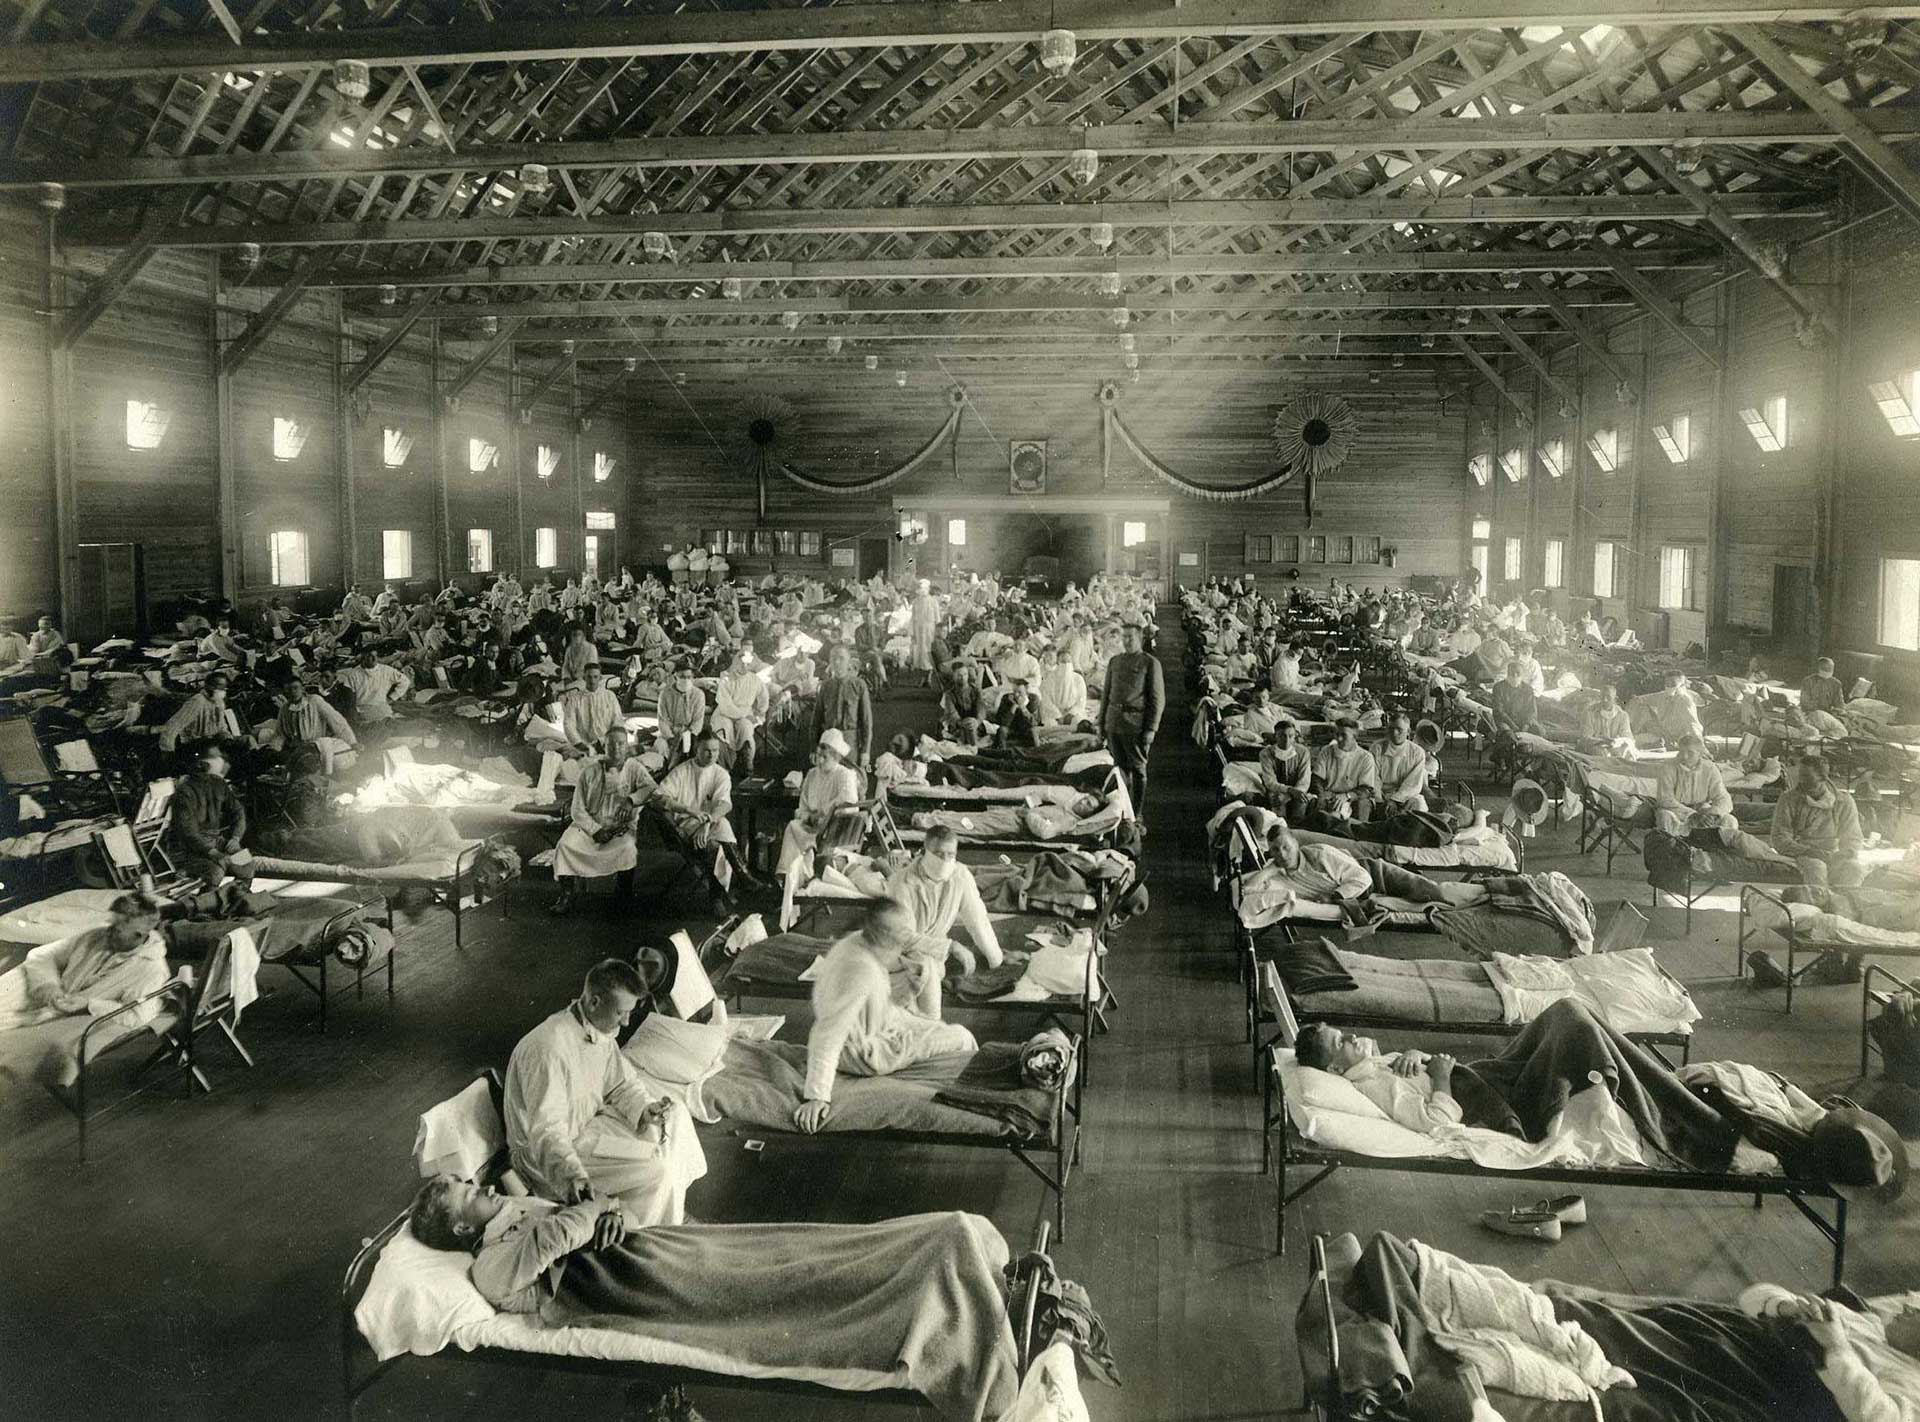 Influenza patients, 1918